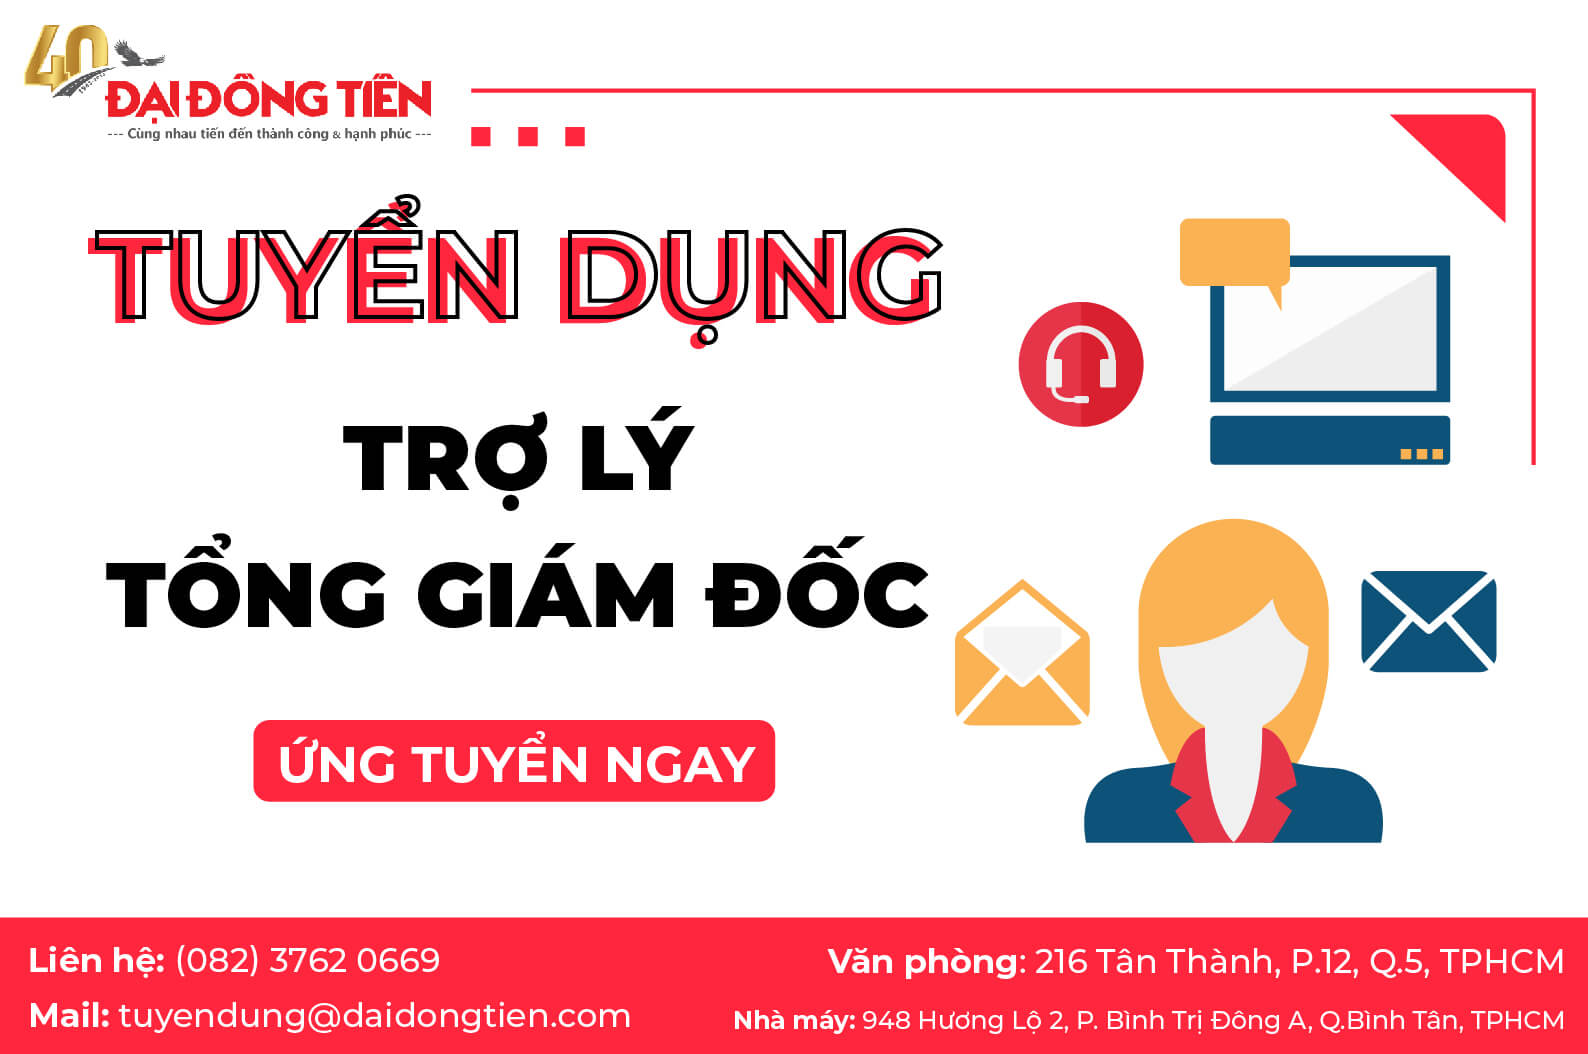 dai-dong-tien-tuyen-dung-tro-ly-tong-giam-doc